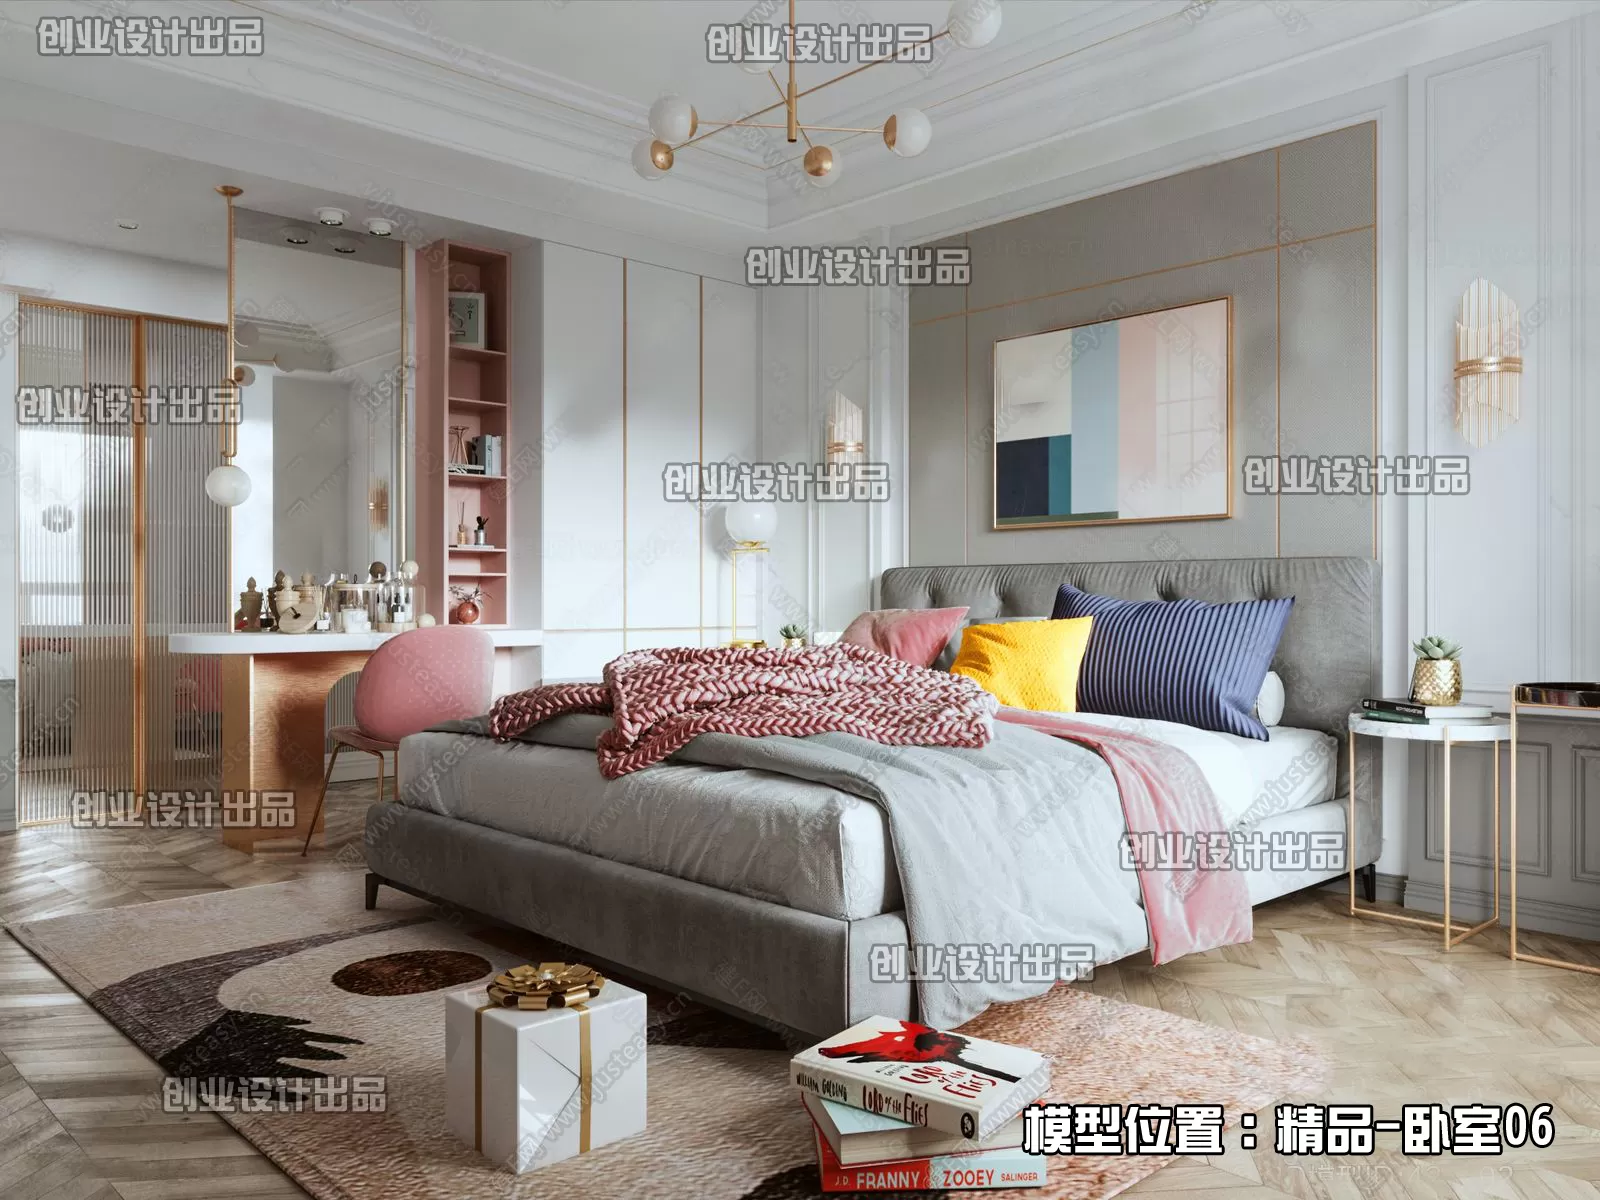 Bedroom - Modern Interior Design - 3D Models - 152 - 3DSKY